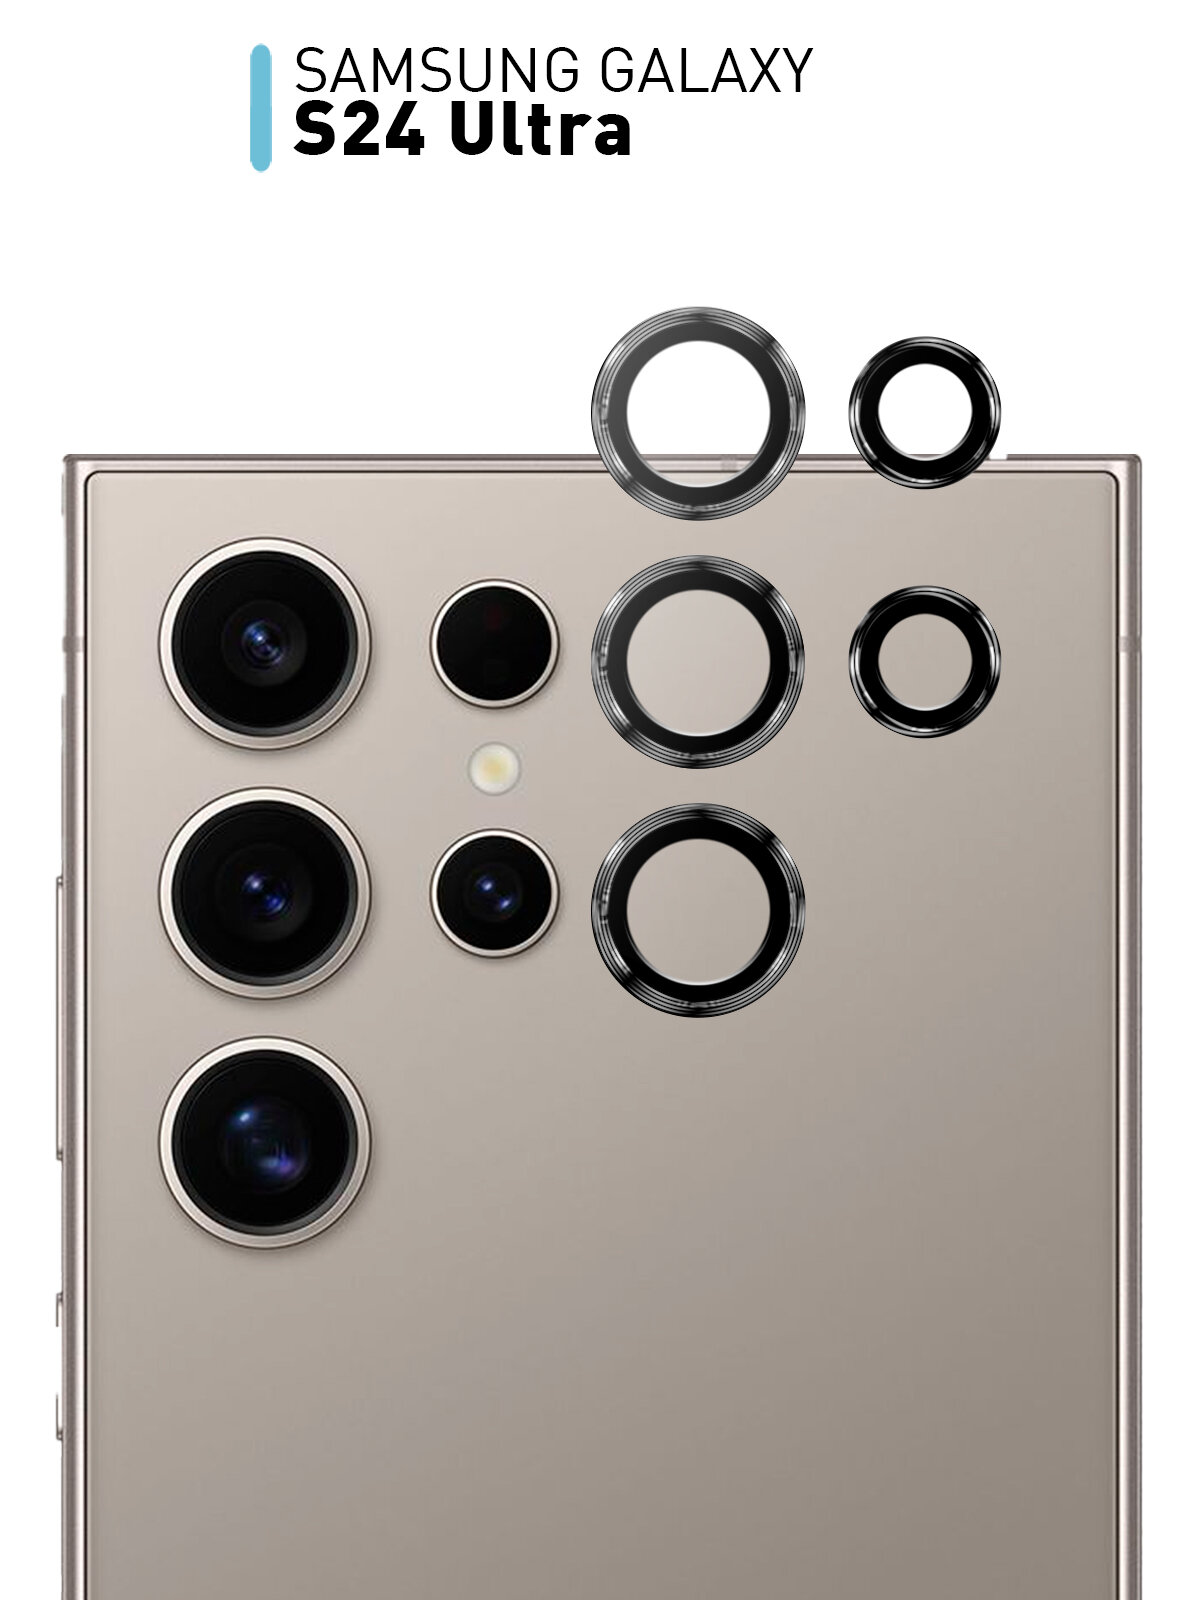 Стекло на камеру ROSCO для Samsung Galaxy S24 Ultra (Самсунг Галакси С24 Ультра) прозрачное с чёрным ободком 3шт.